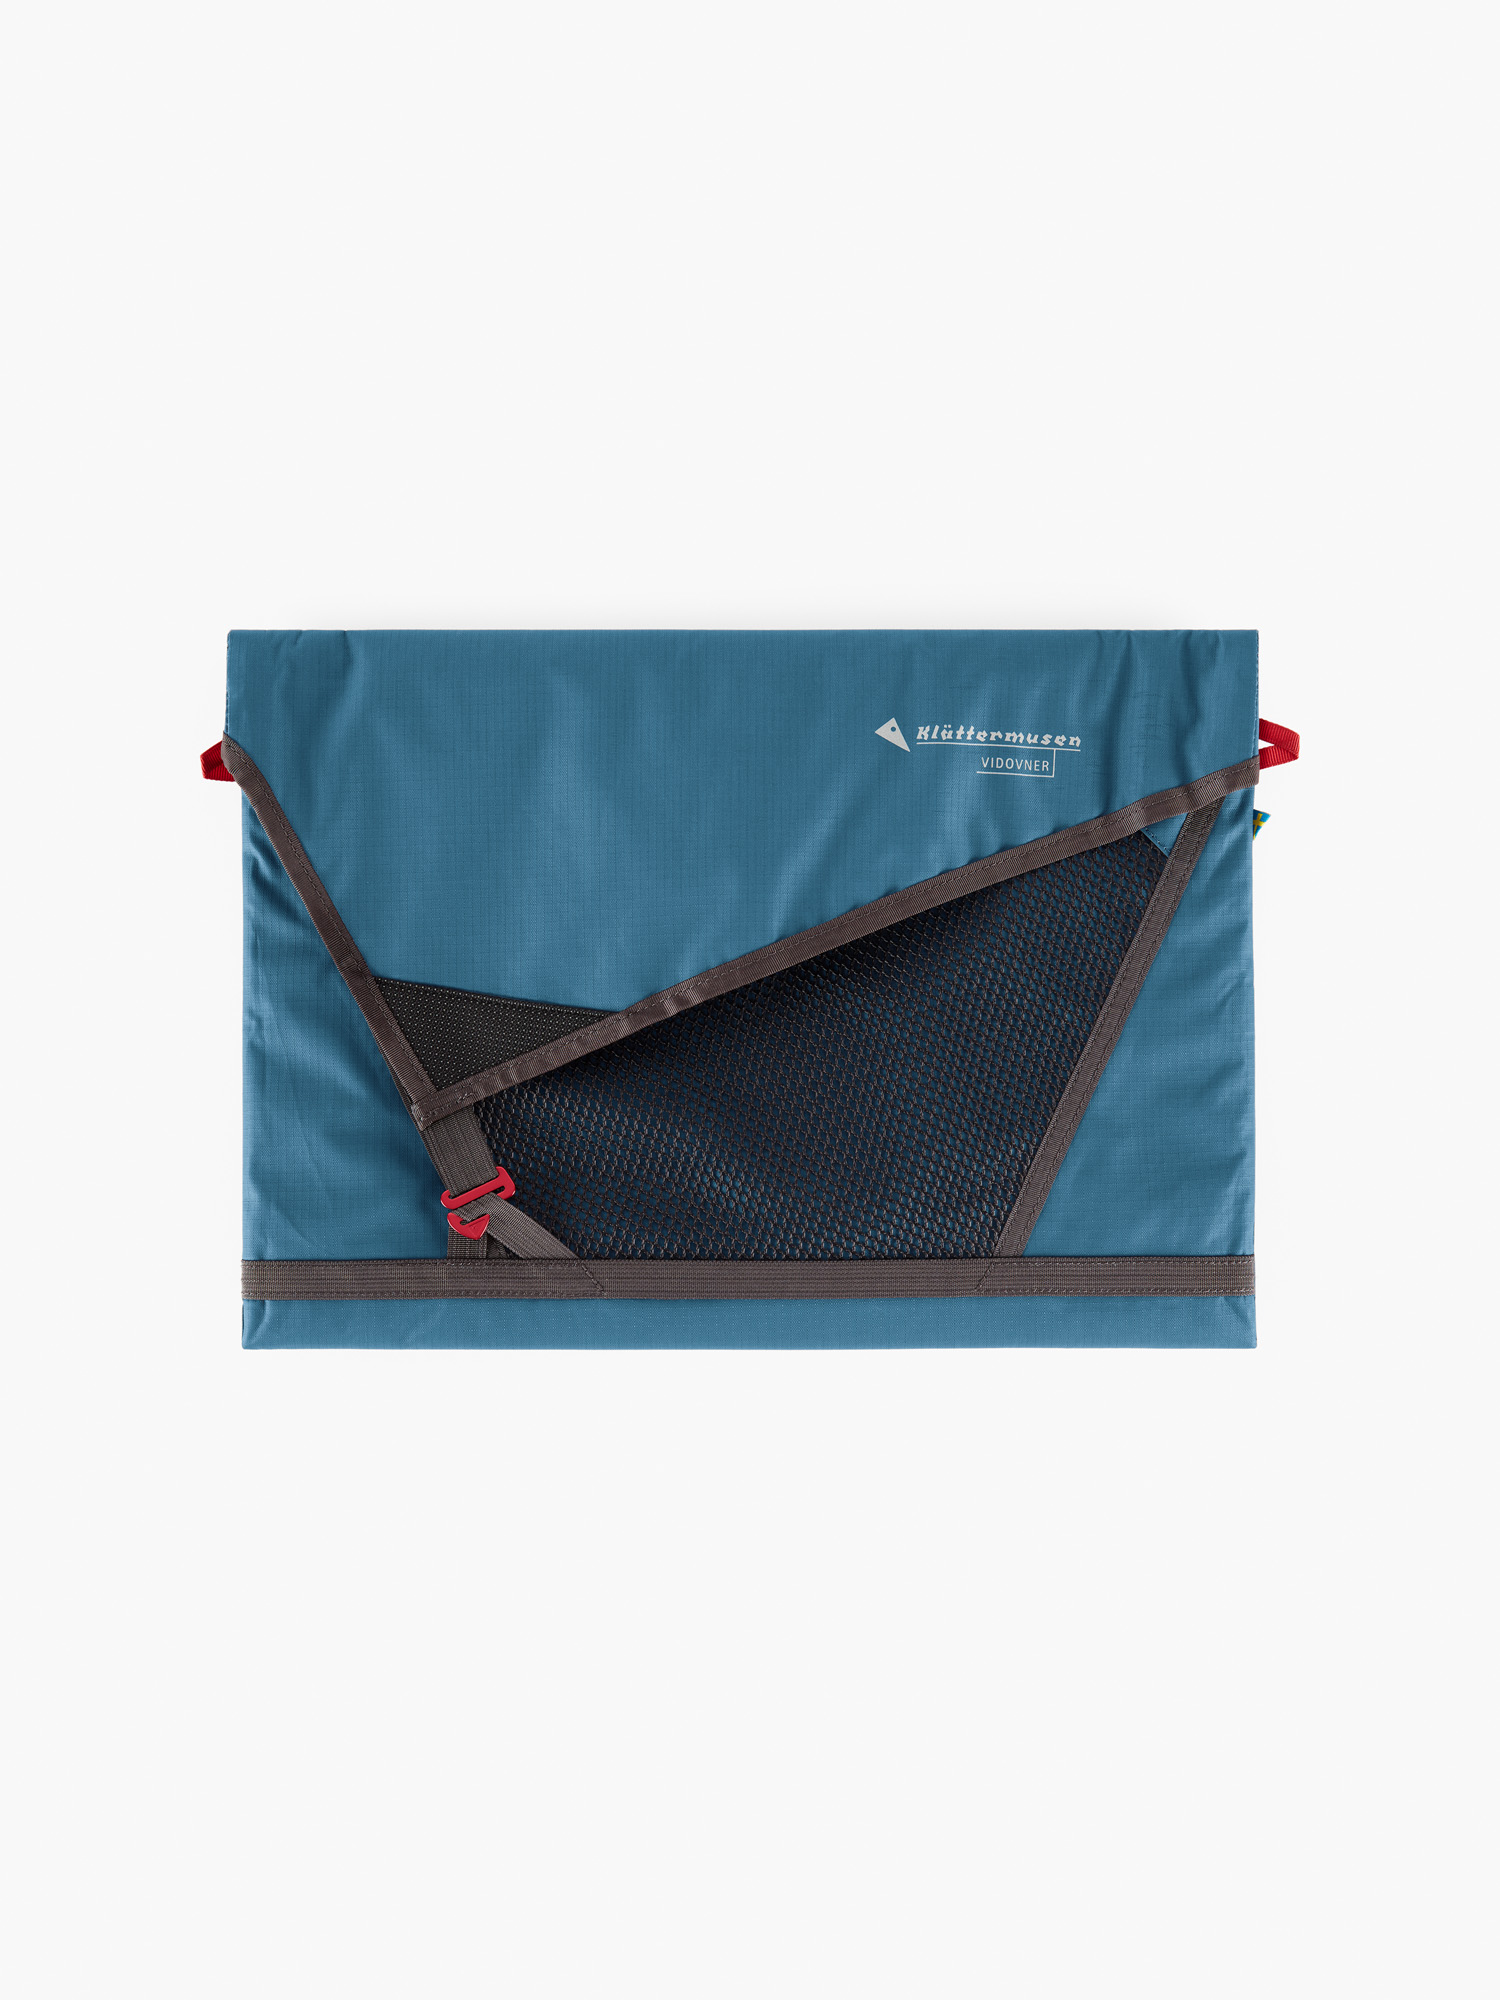 41451U21 - Vidovner Laptop Sleeve Medium - Monkshood Blue